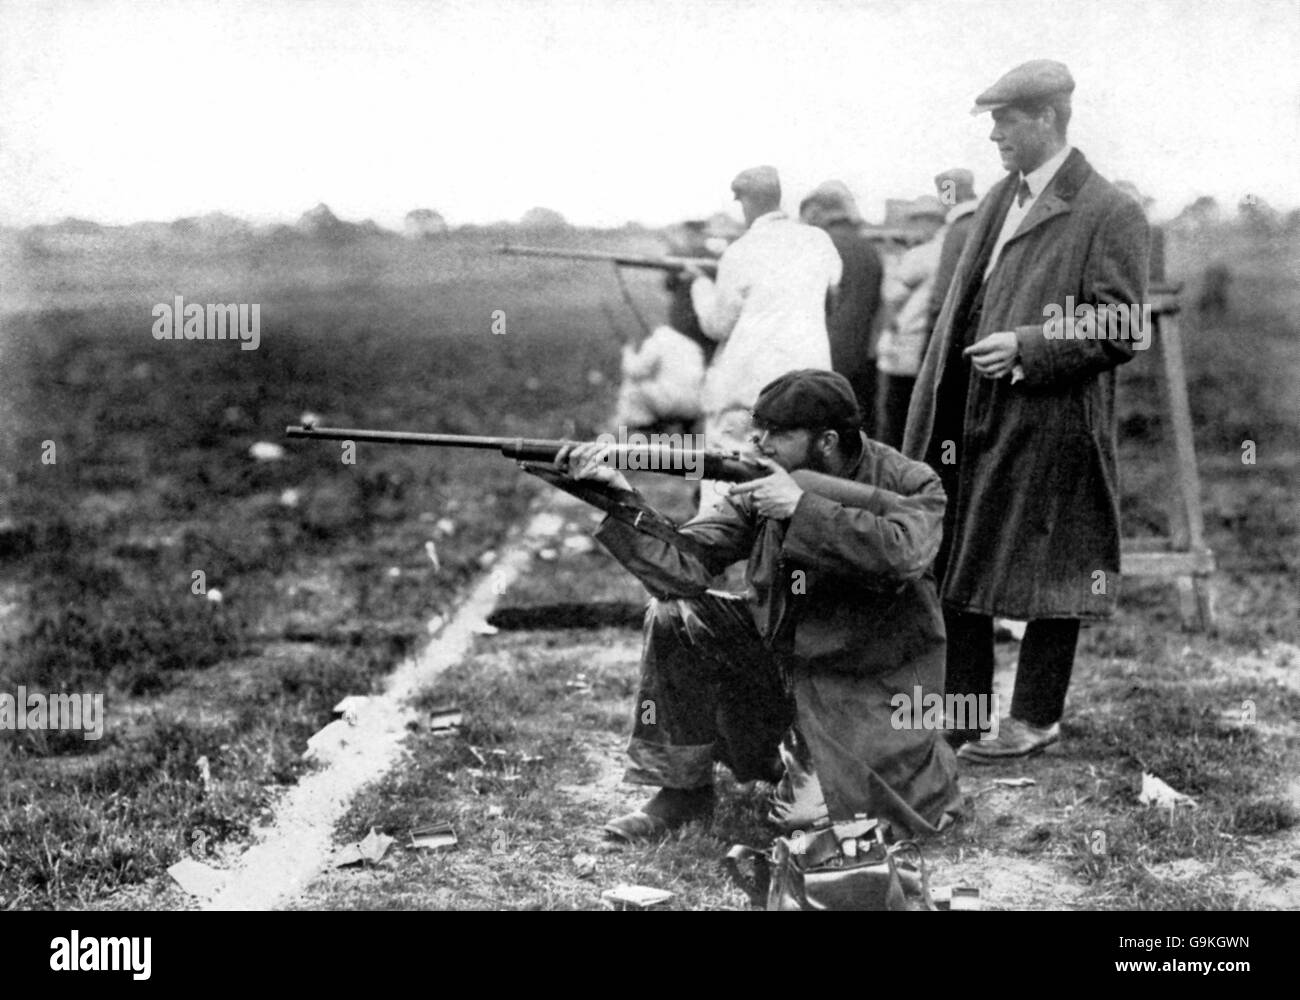 Tir - Jeux Olympiques de Londres 1908 - fusil gratuit - Bisley.Maurice Blood, de Grande-Bretagne, qui a gagné le bronze dans la discipline du fusil libre, prend le but Banque D'Images